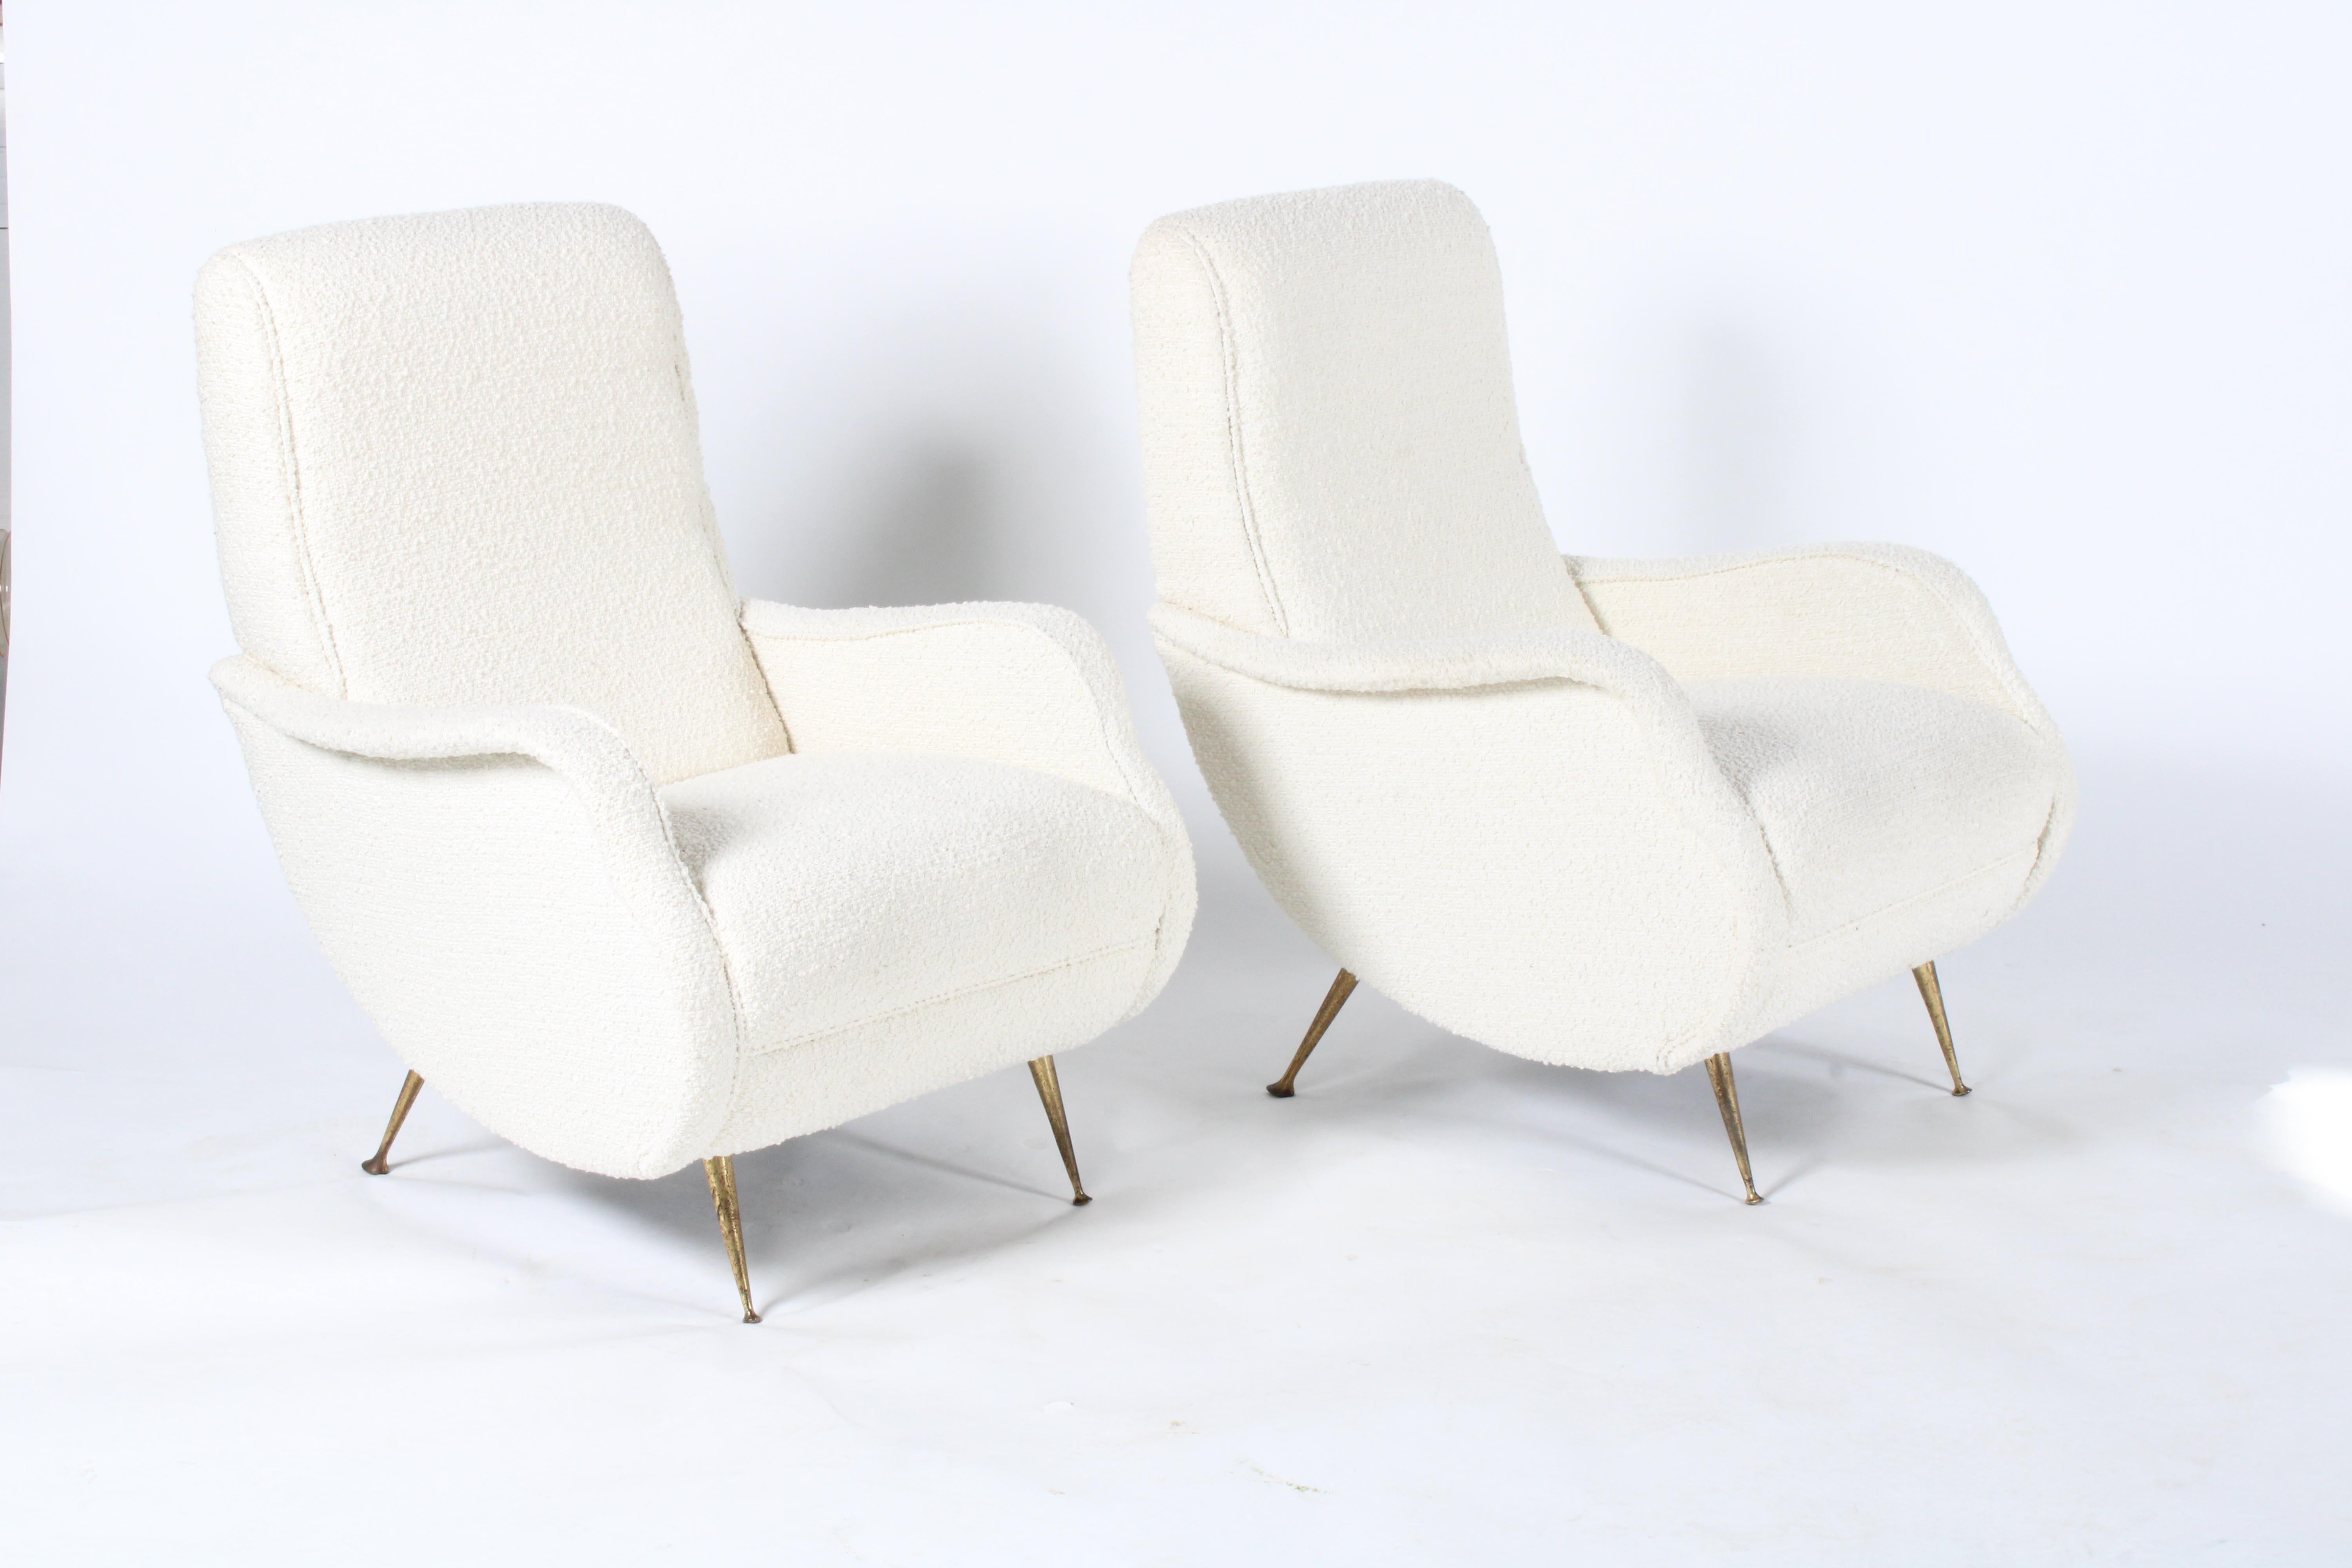 Sublime paire de fauteuils italiens modernes du milieu du siècle. Provenant d'une collection privée de Modène en Italie, cette paire étonnante a été récemment recouverte d'un tissu chic de type bouclé. Les accoudoirs et les côtés incurvés très